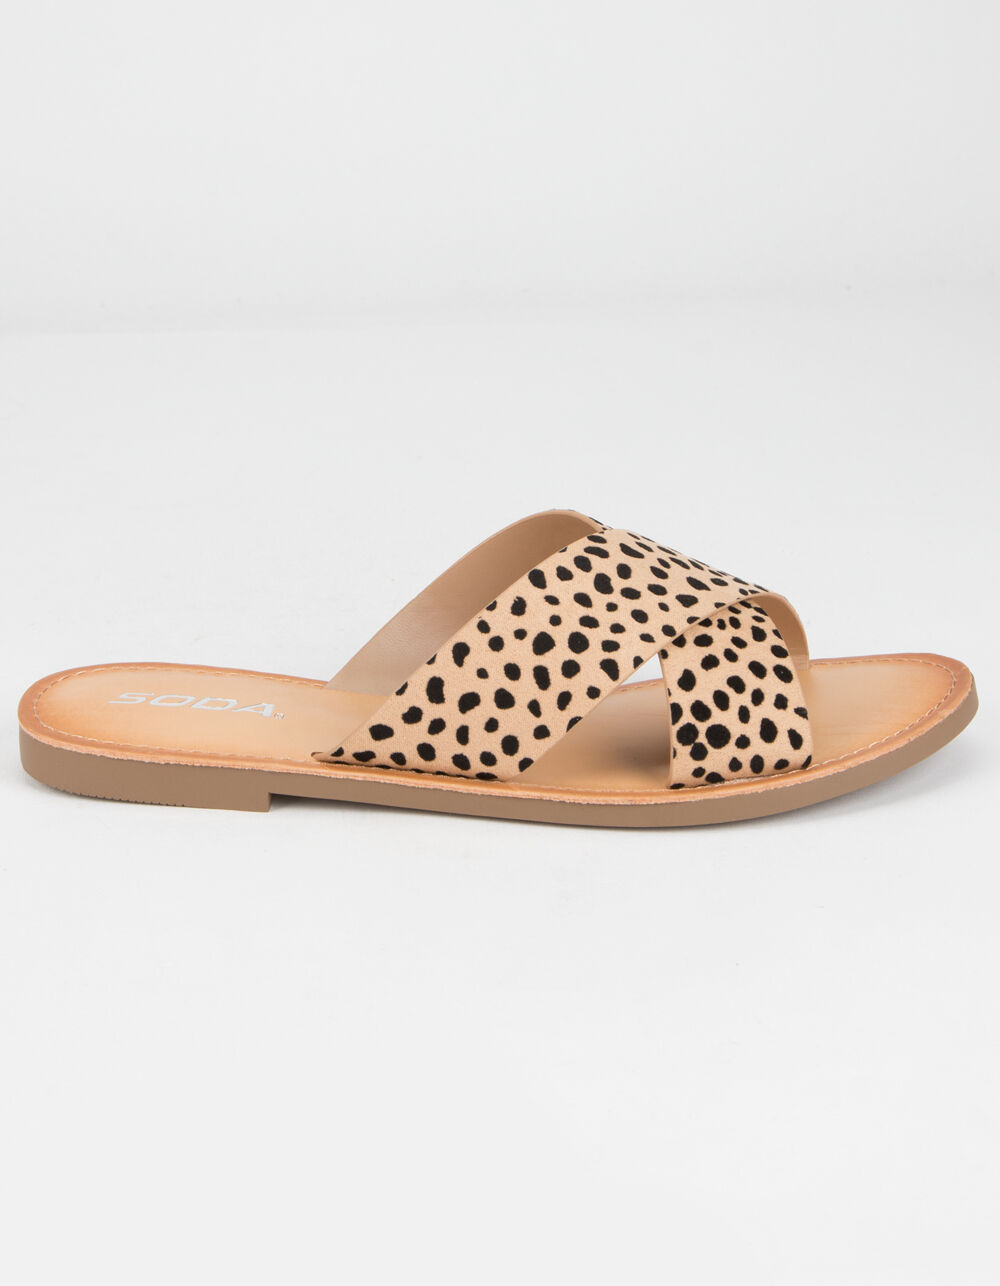 SODA Crisscross Cheetah Womens Slide Sandals - CHEETAH | Tillys